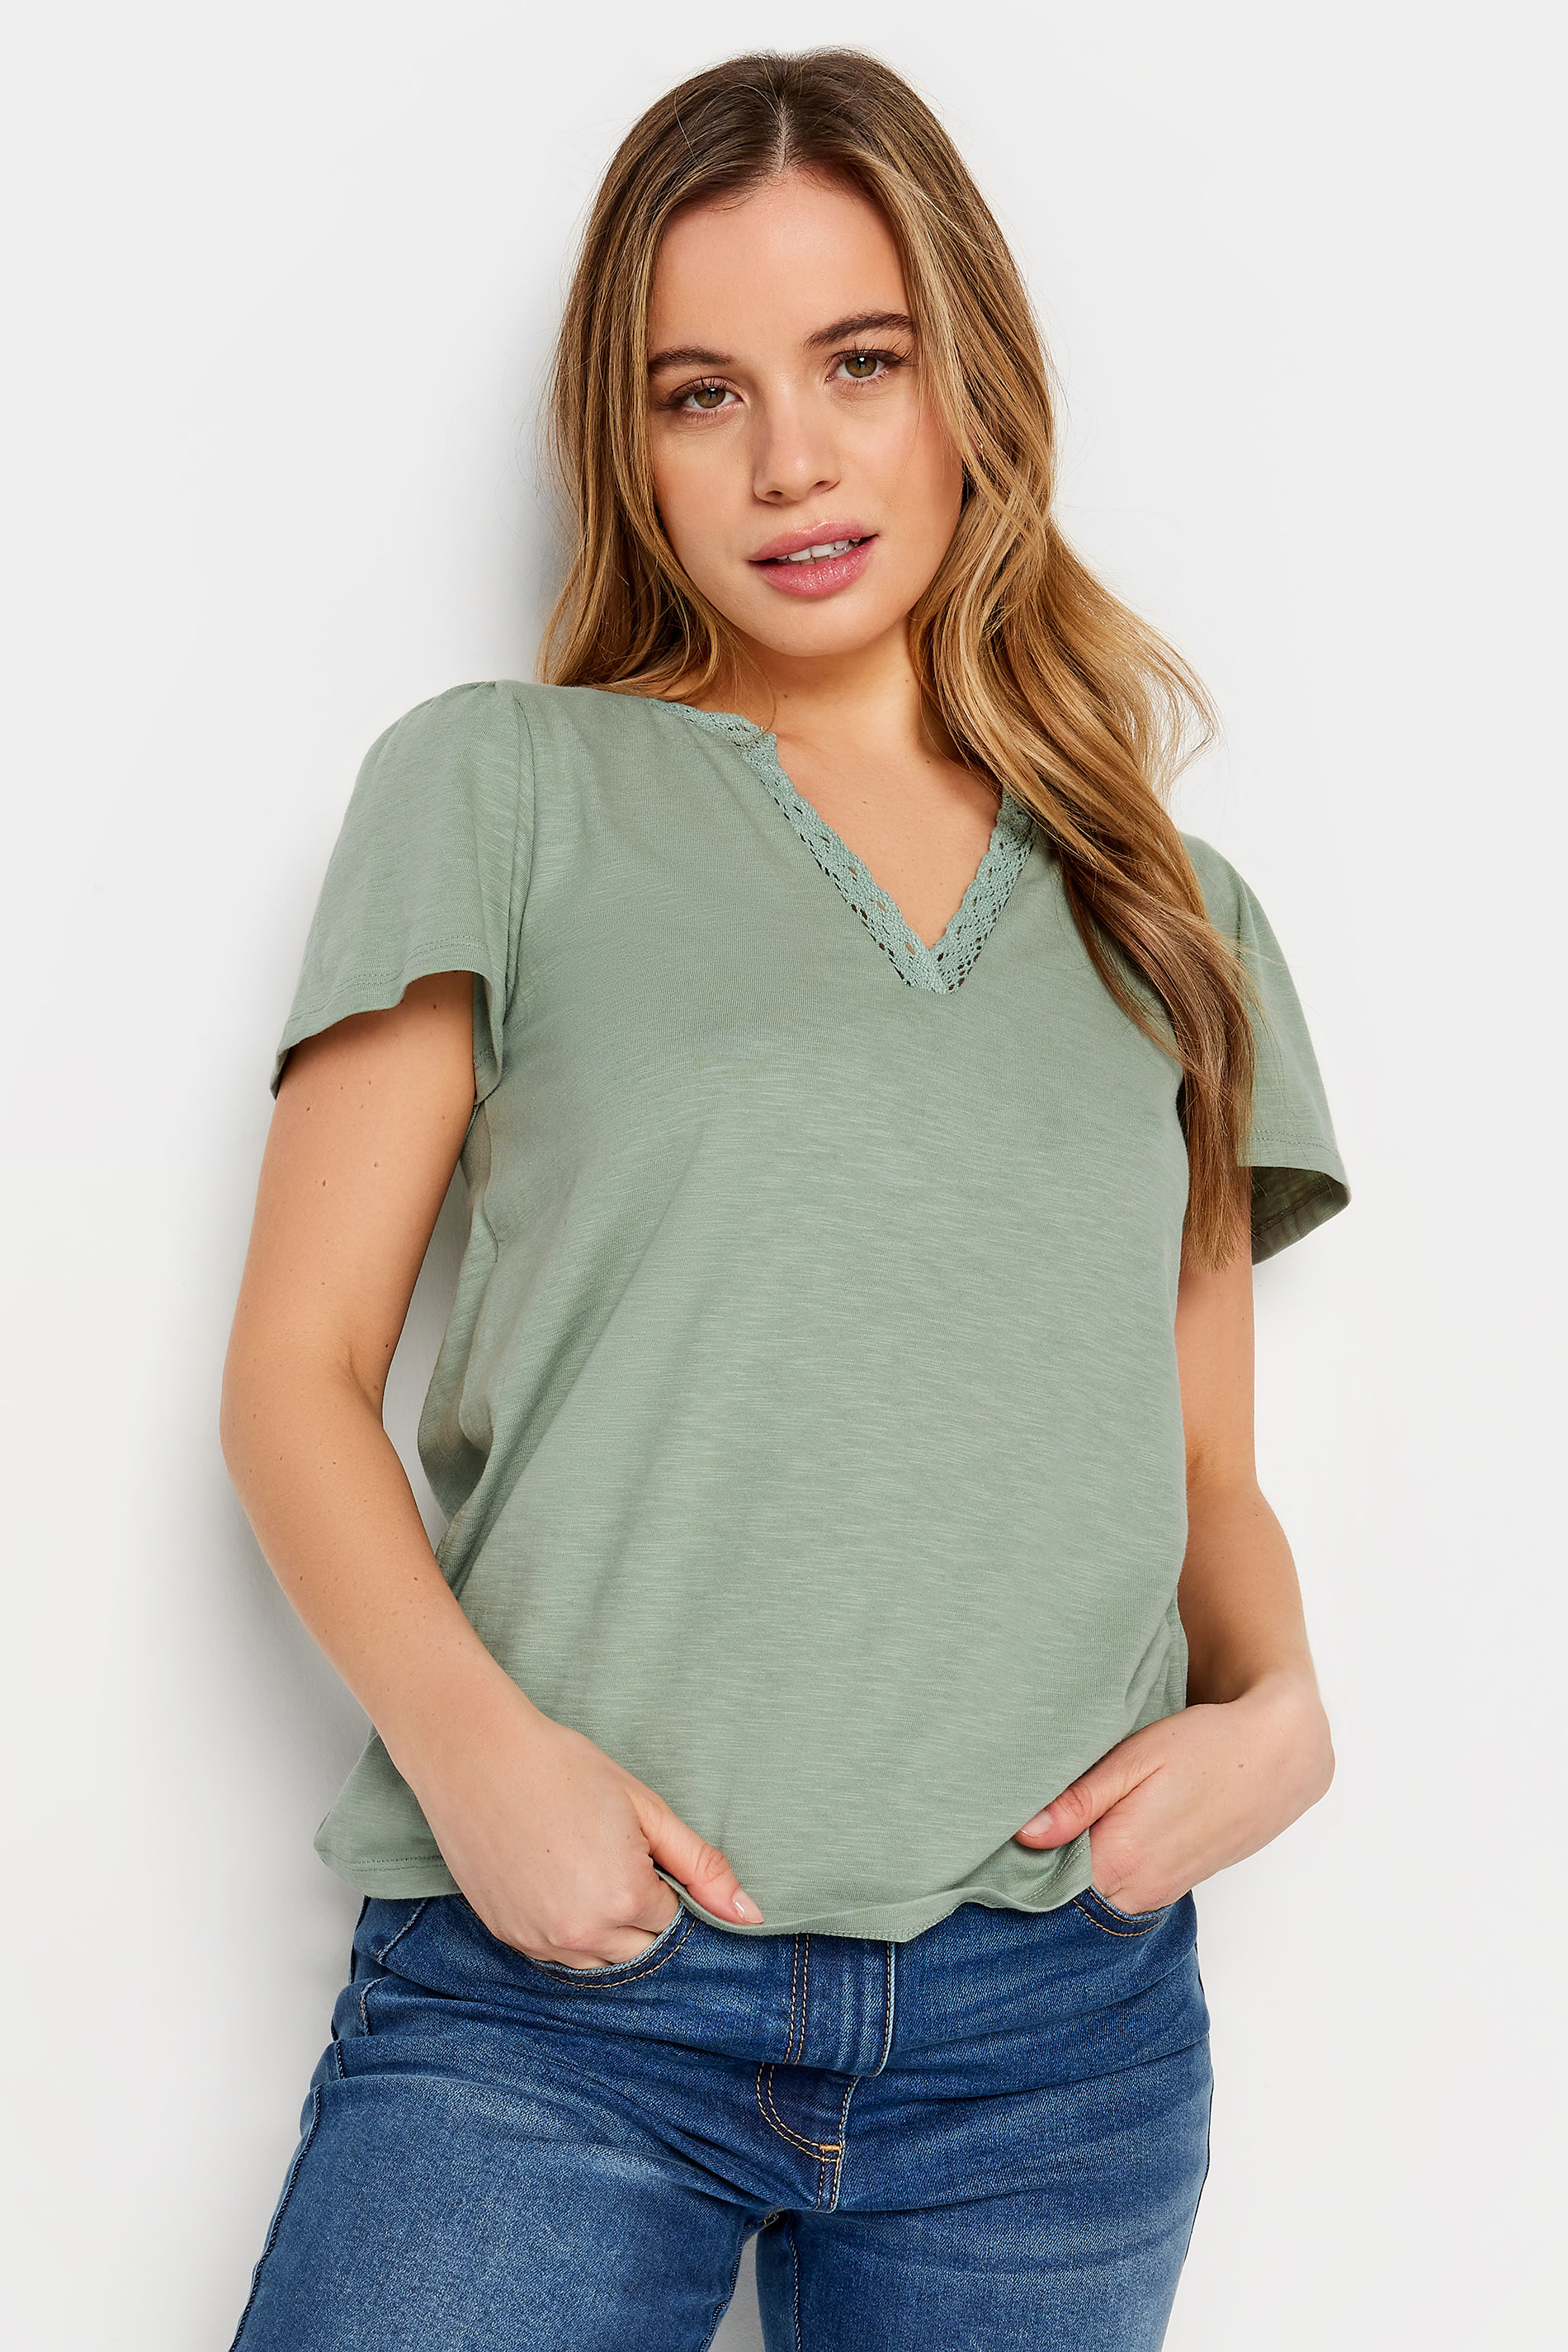 M&Co Petite Sage Green Lace Trim T-Shirt | M&Co 1